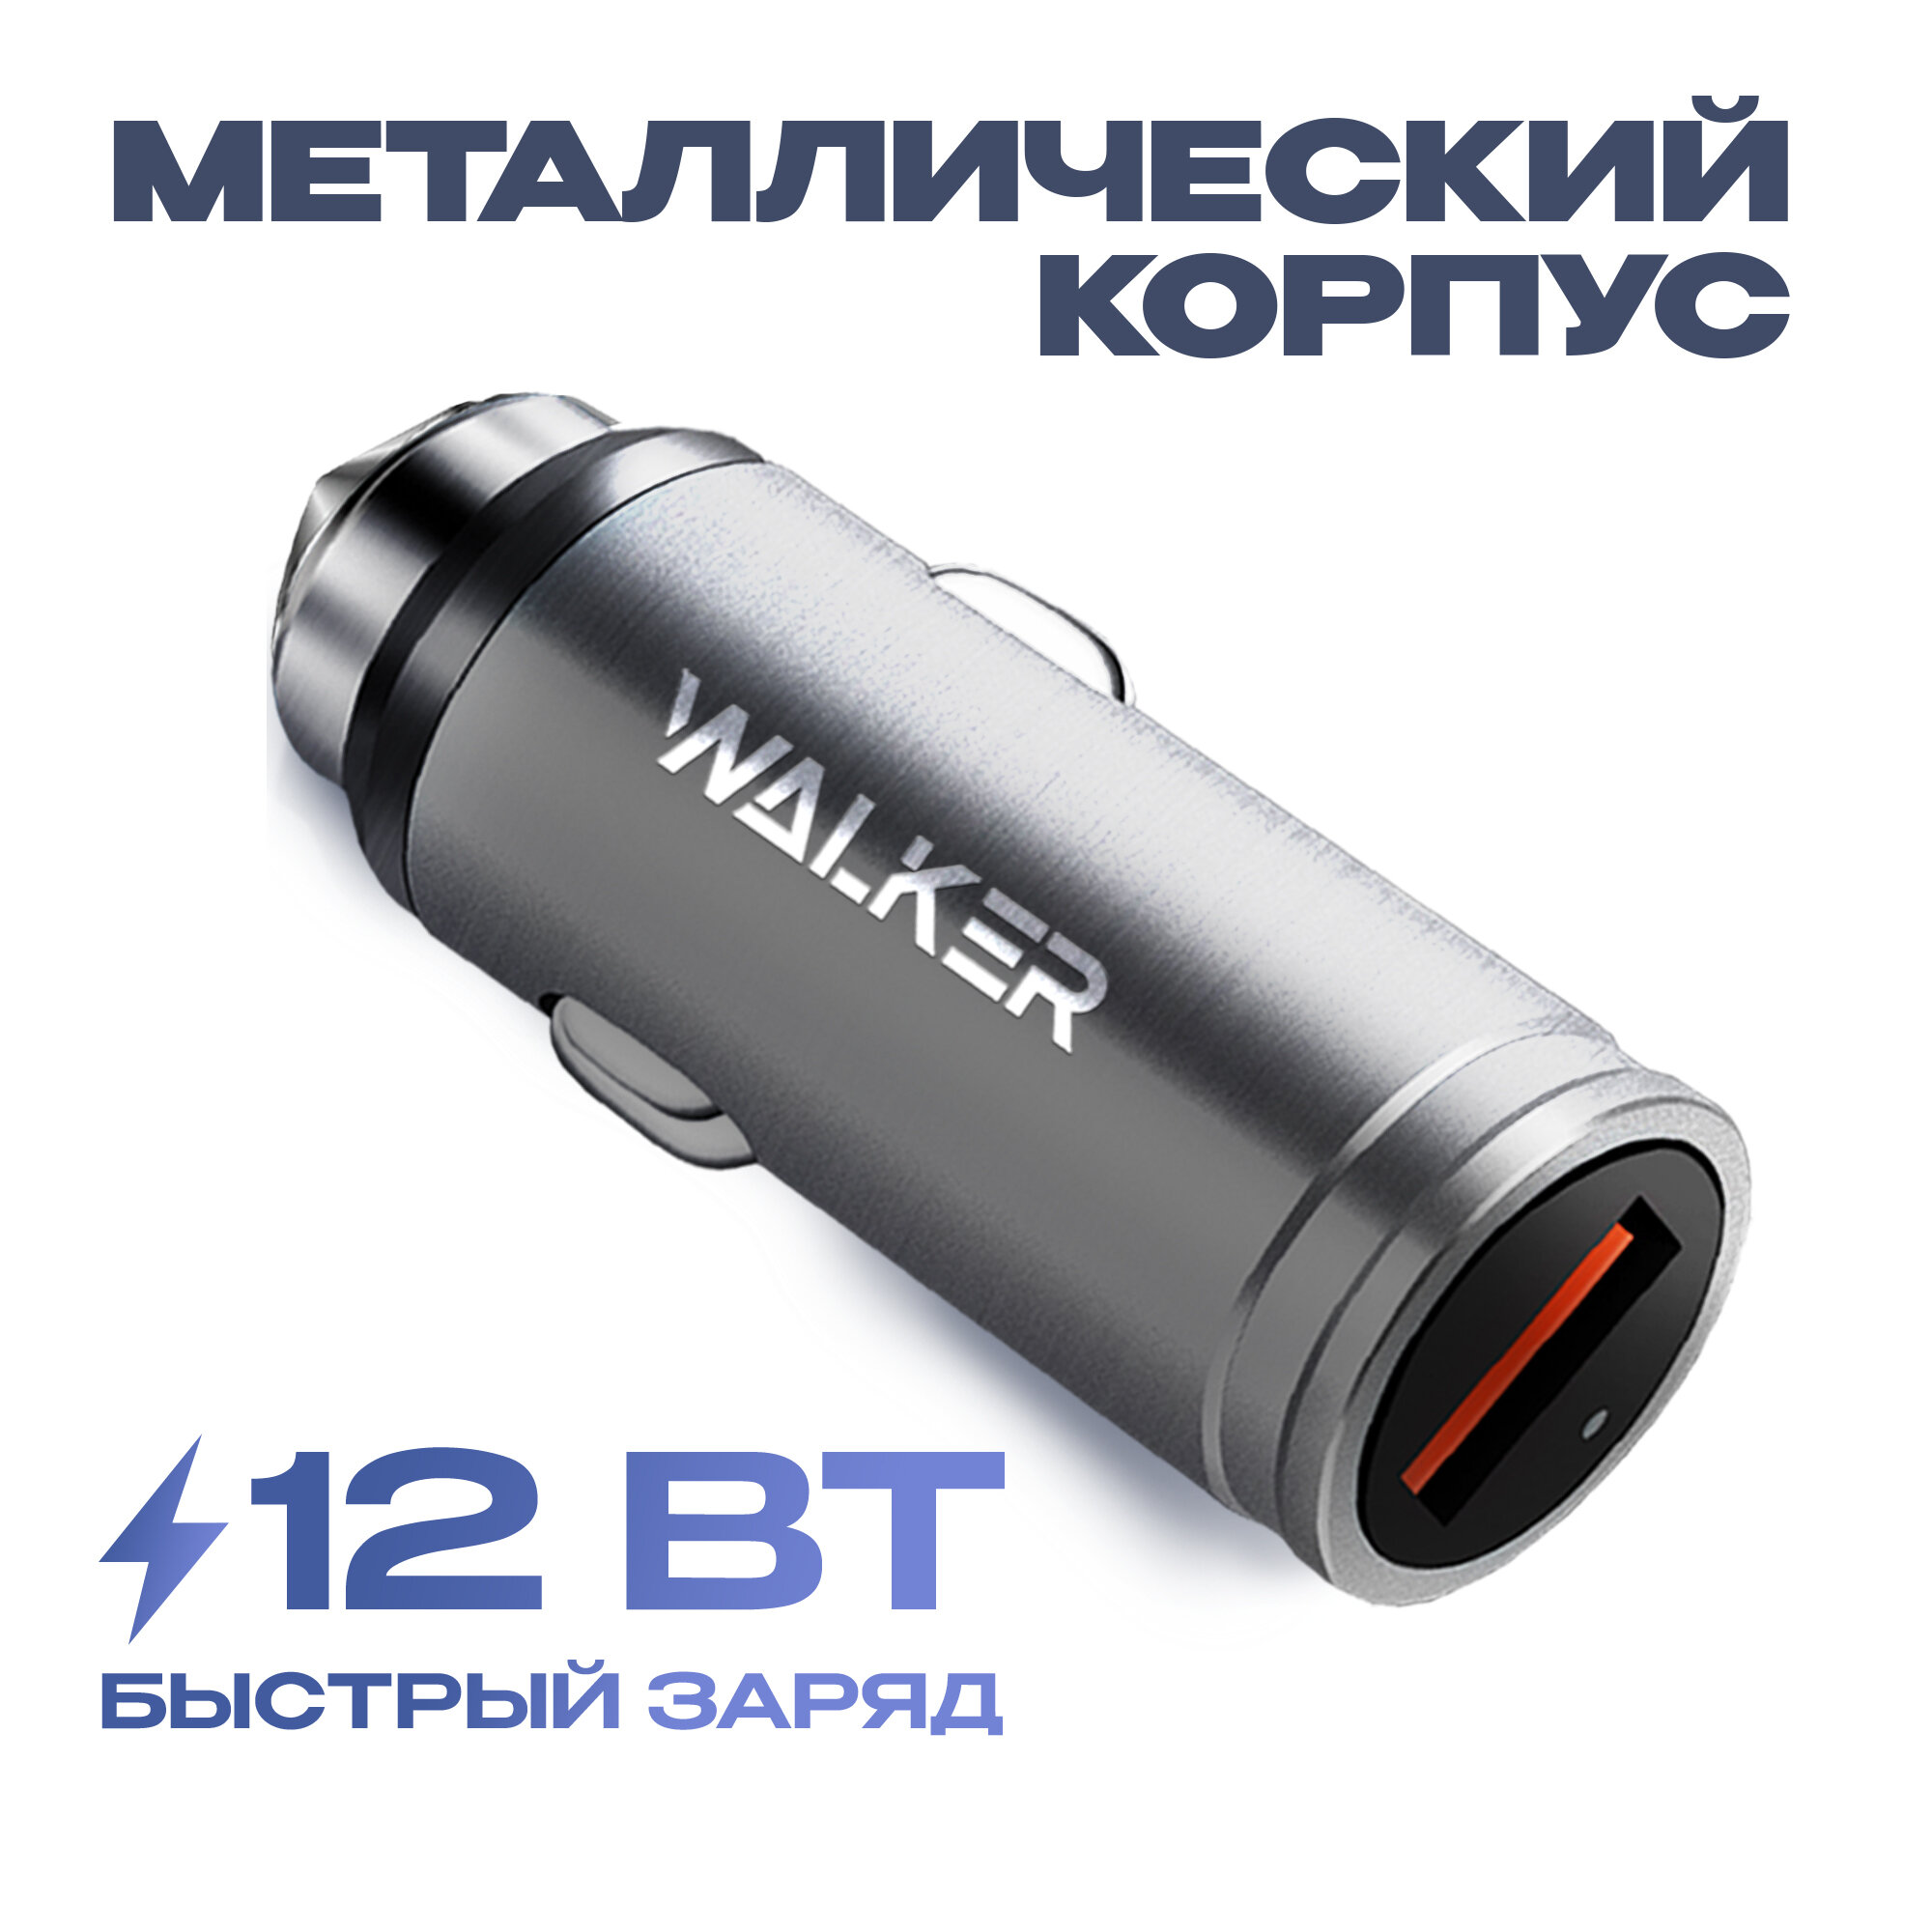 Автомобильное быстрое зарядное устройство для телефона, WALKER, WCR-23, 18 Вт, 2,4 А, зарядка USB в прикуриватель, блок питания в машину, серое